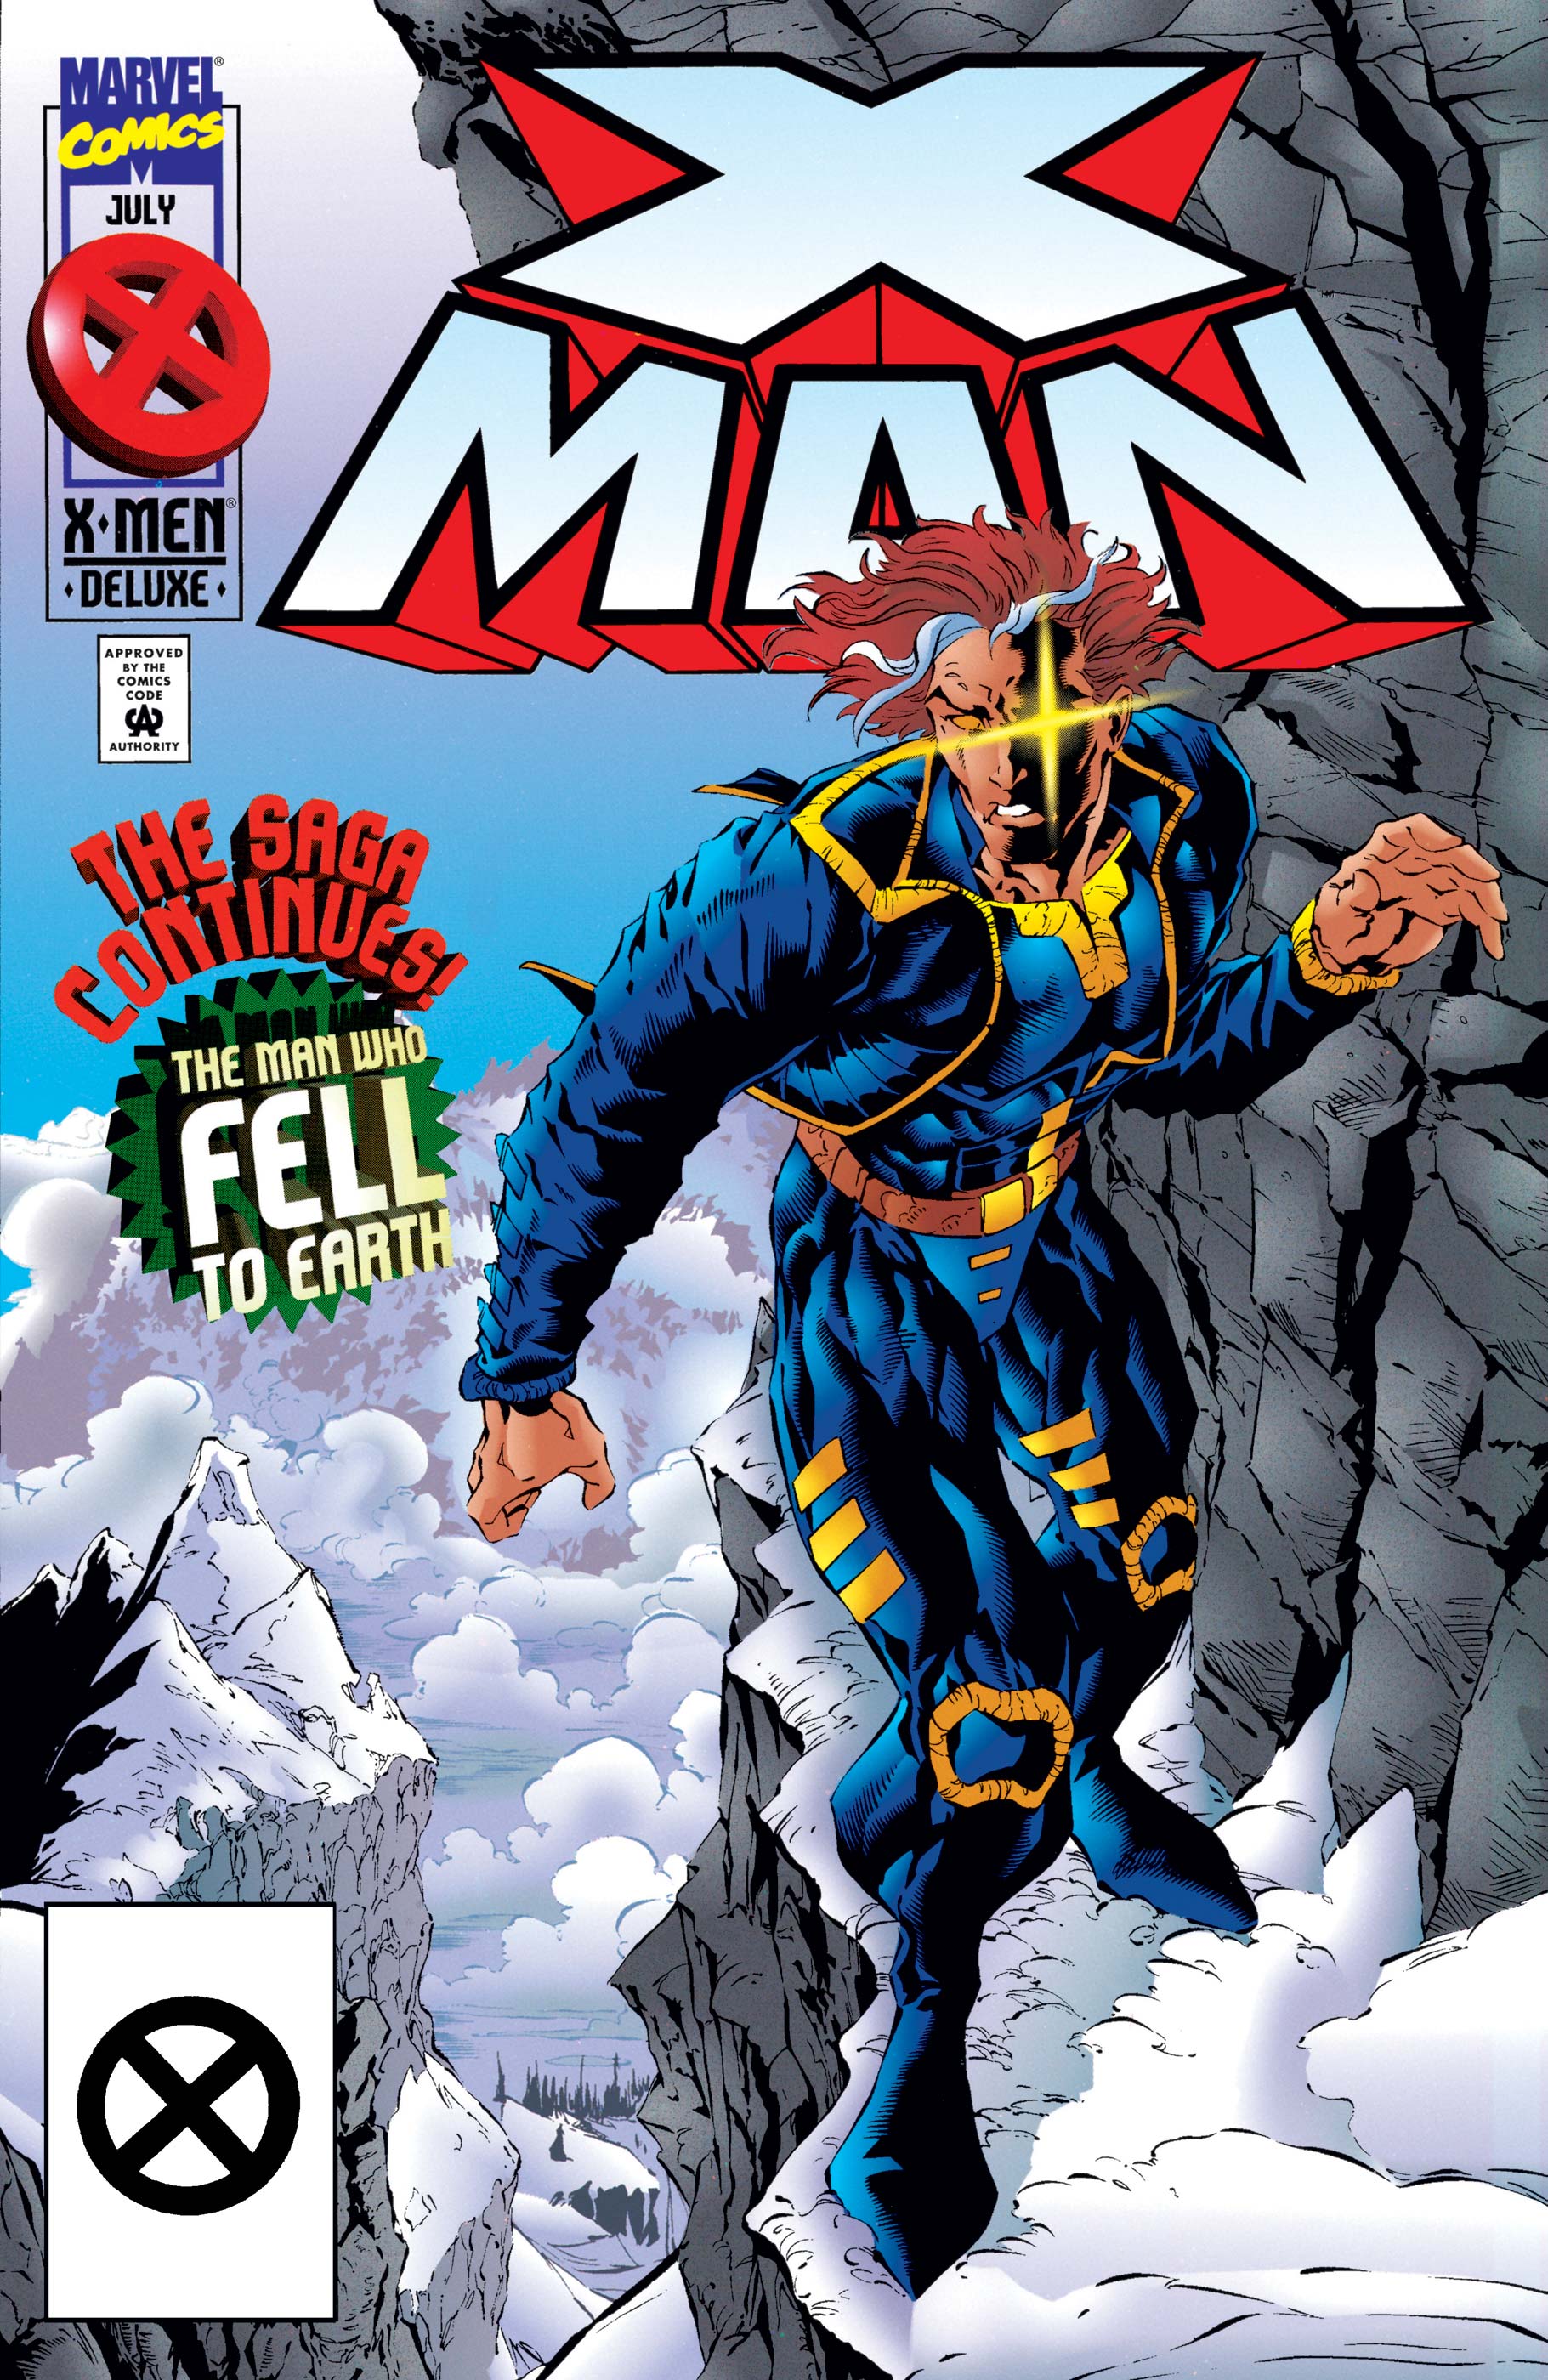 X-Man (1995) #5